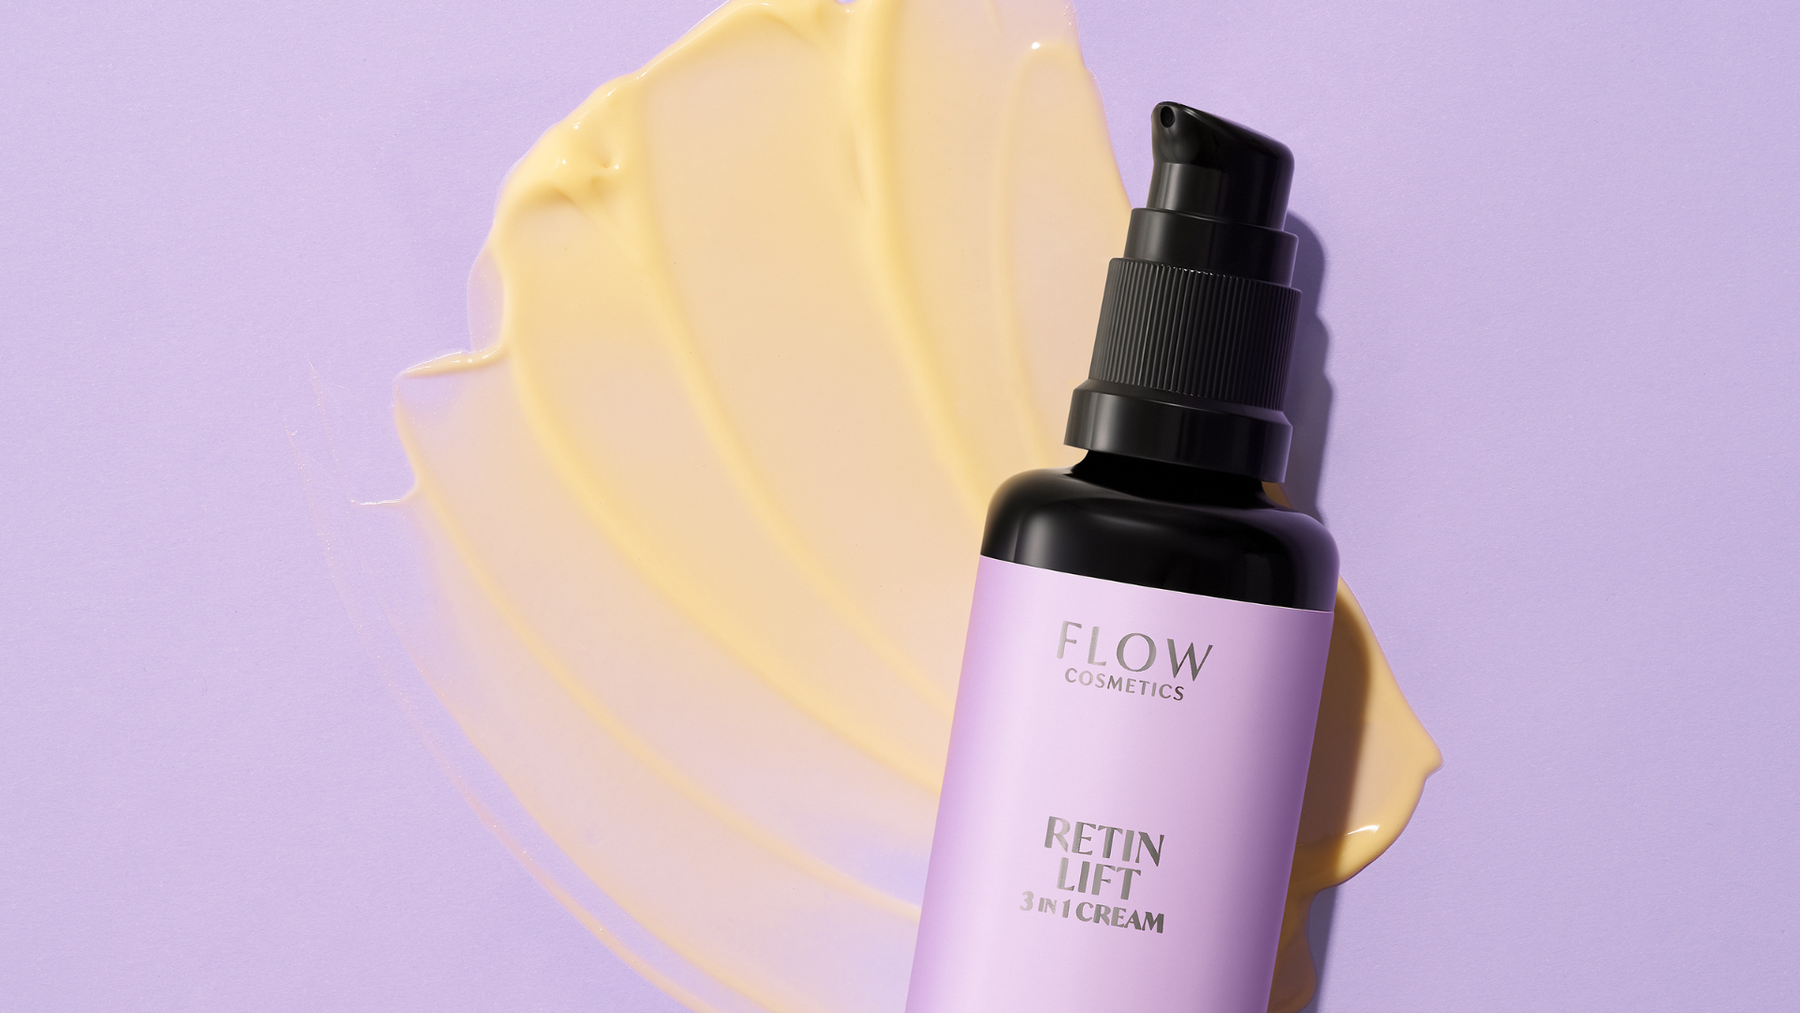 Flow Cosmetics aikuiselle ja ikääntyvälle iholle sopivat luonnonkosmetiikkatuotteet